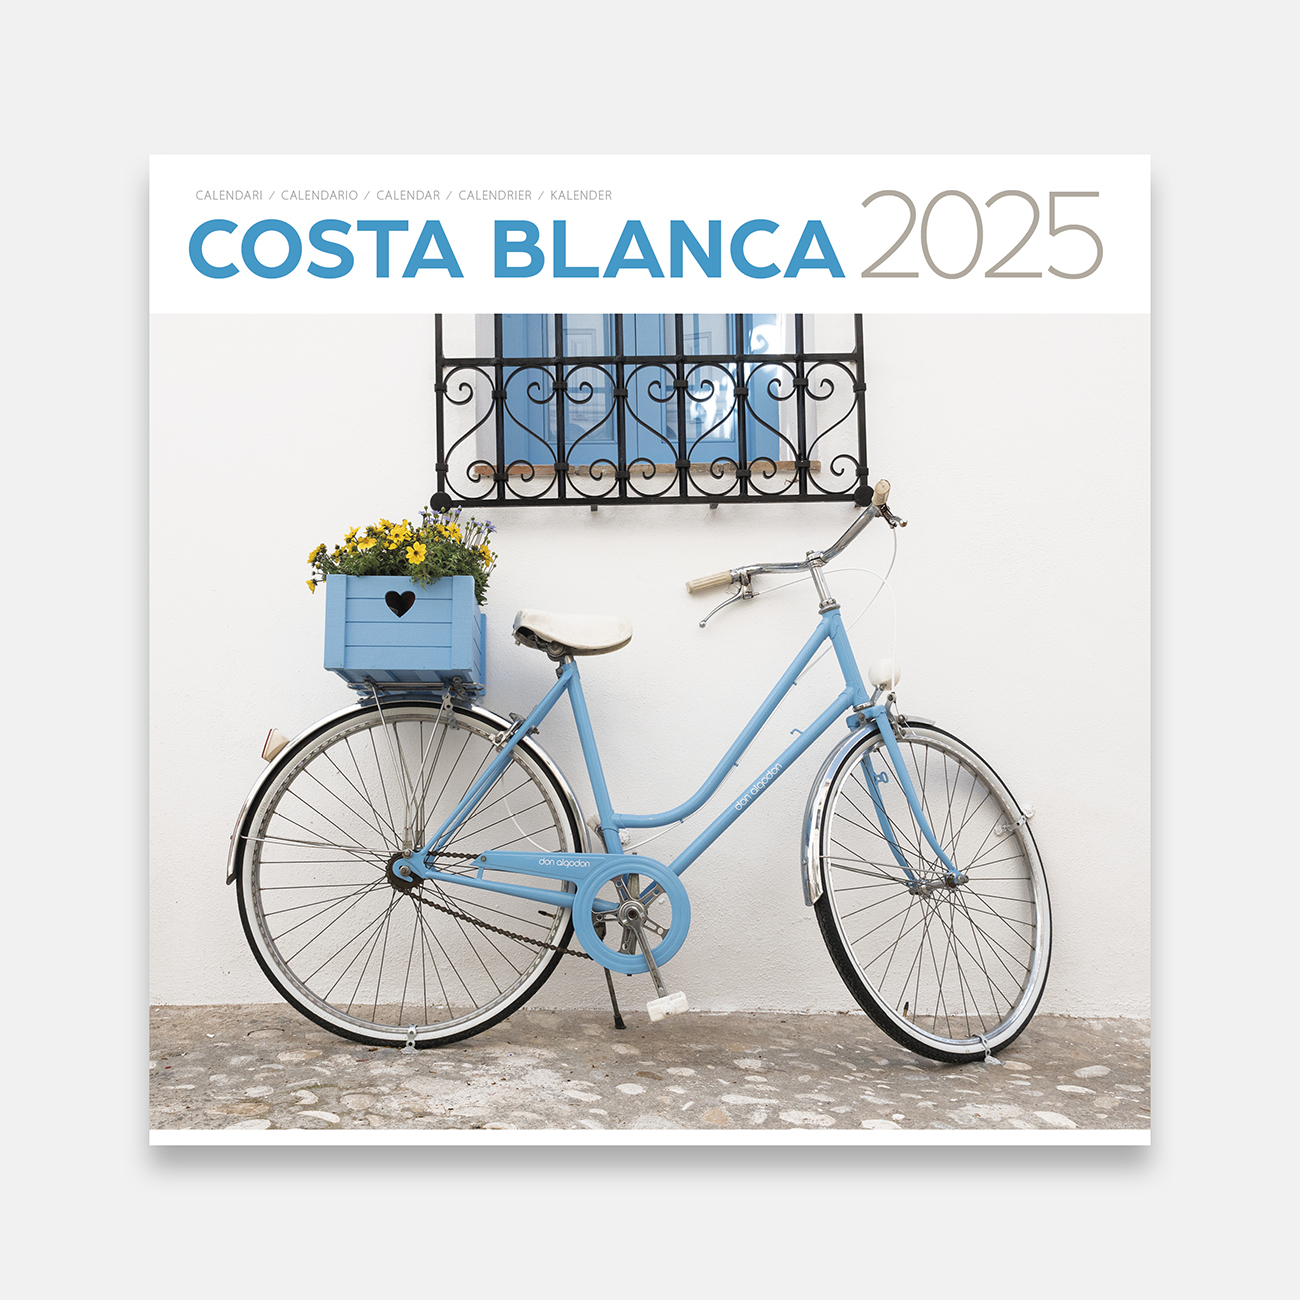 Calendar 2025 Costa Blanca 25bl a calendario pared 2025 costa blanca